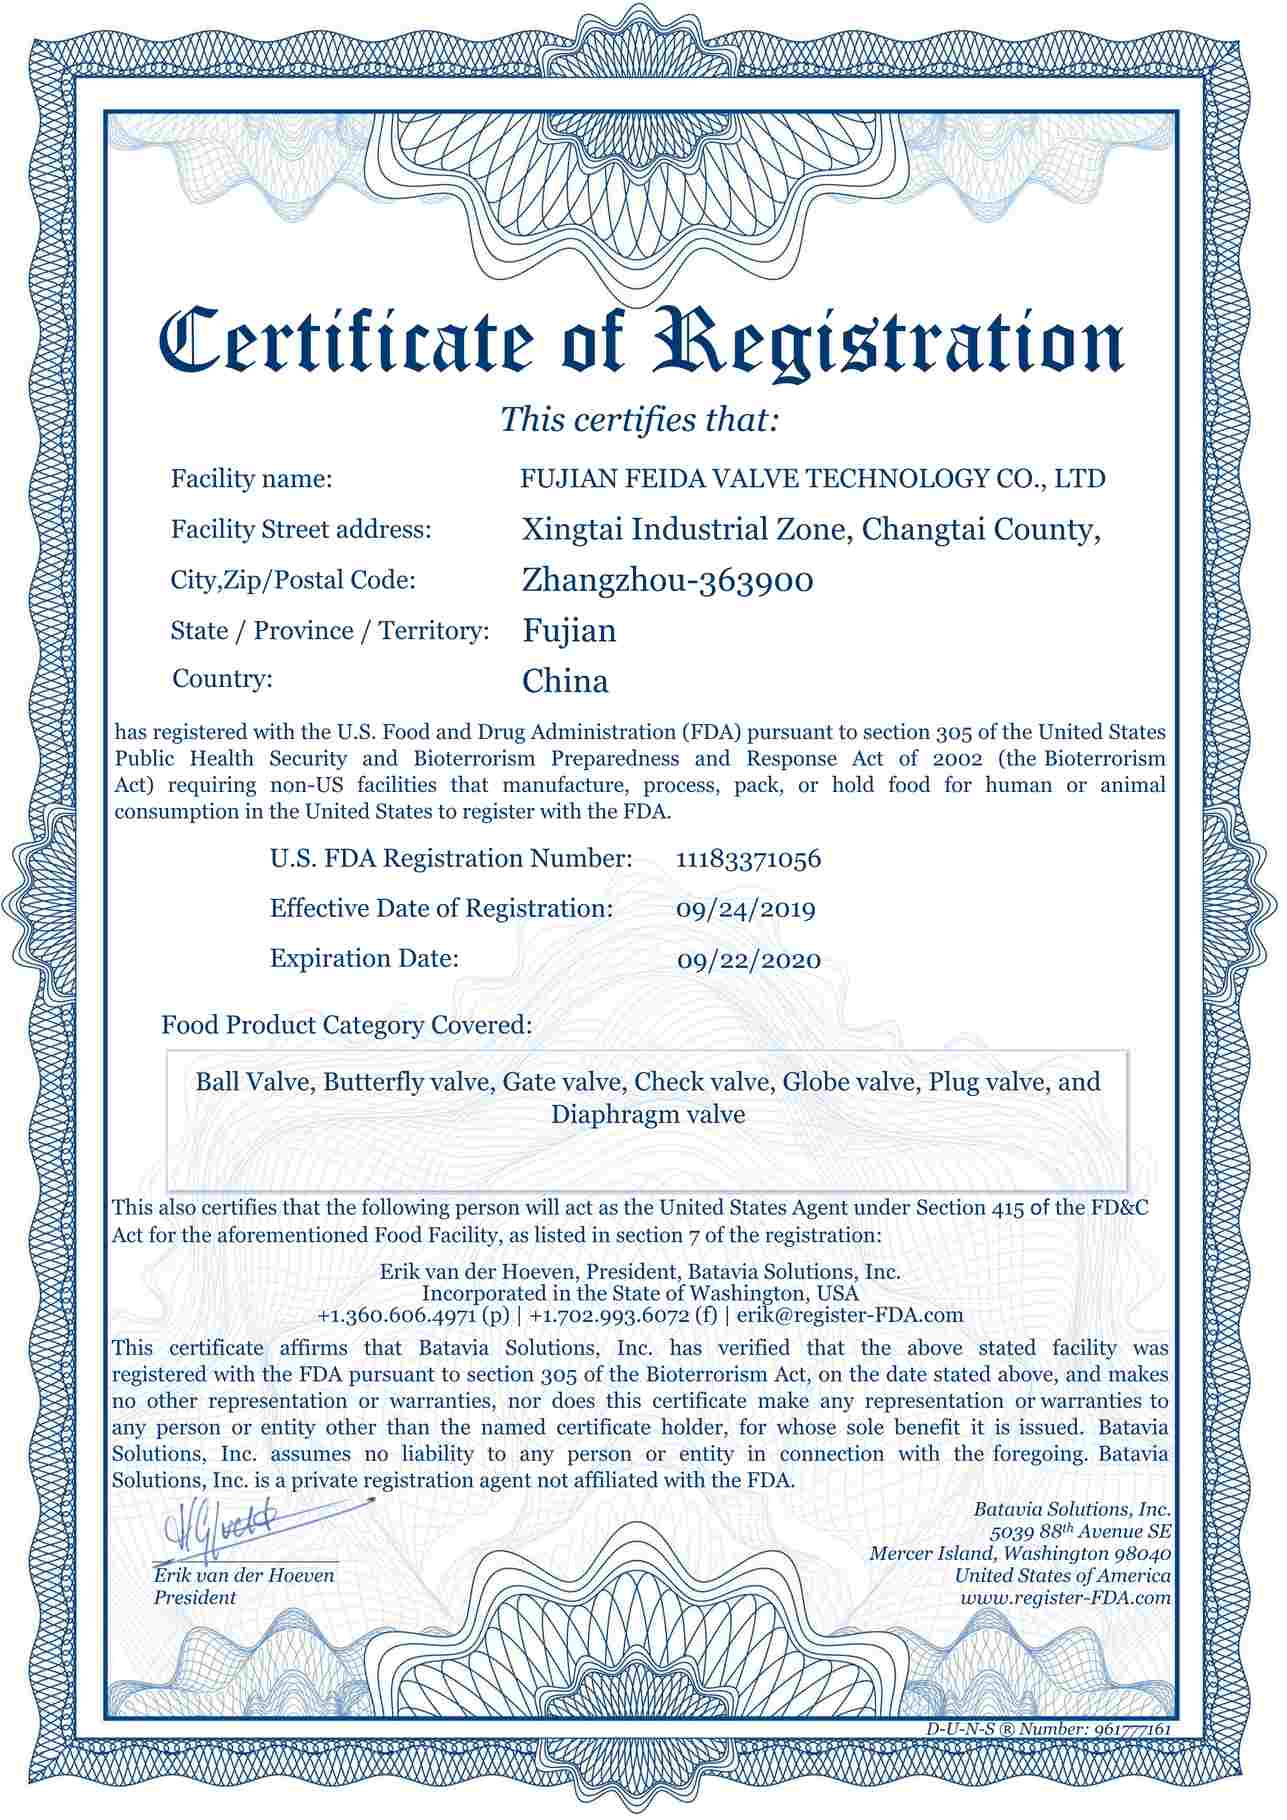 Сертификат Управления по контролю за продуктами и лекарствами США (FDA)
    